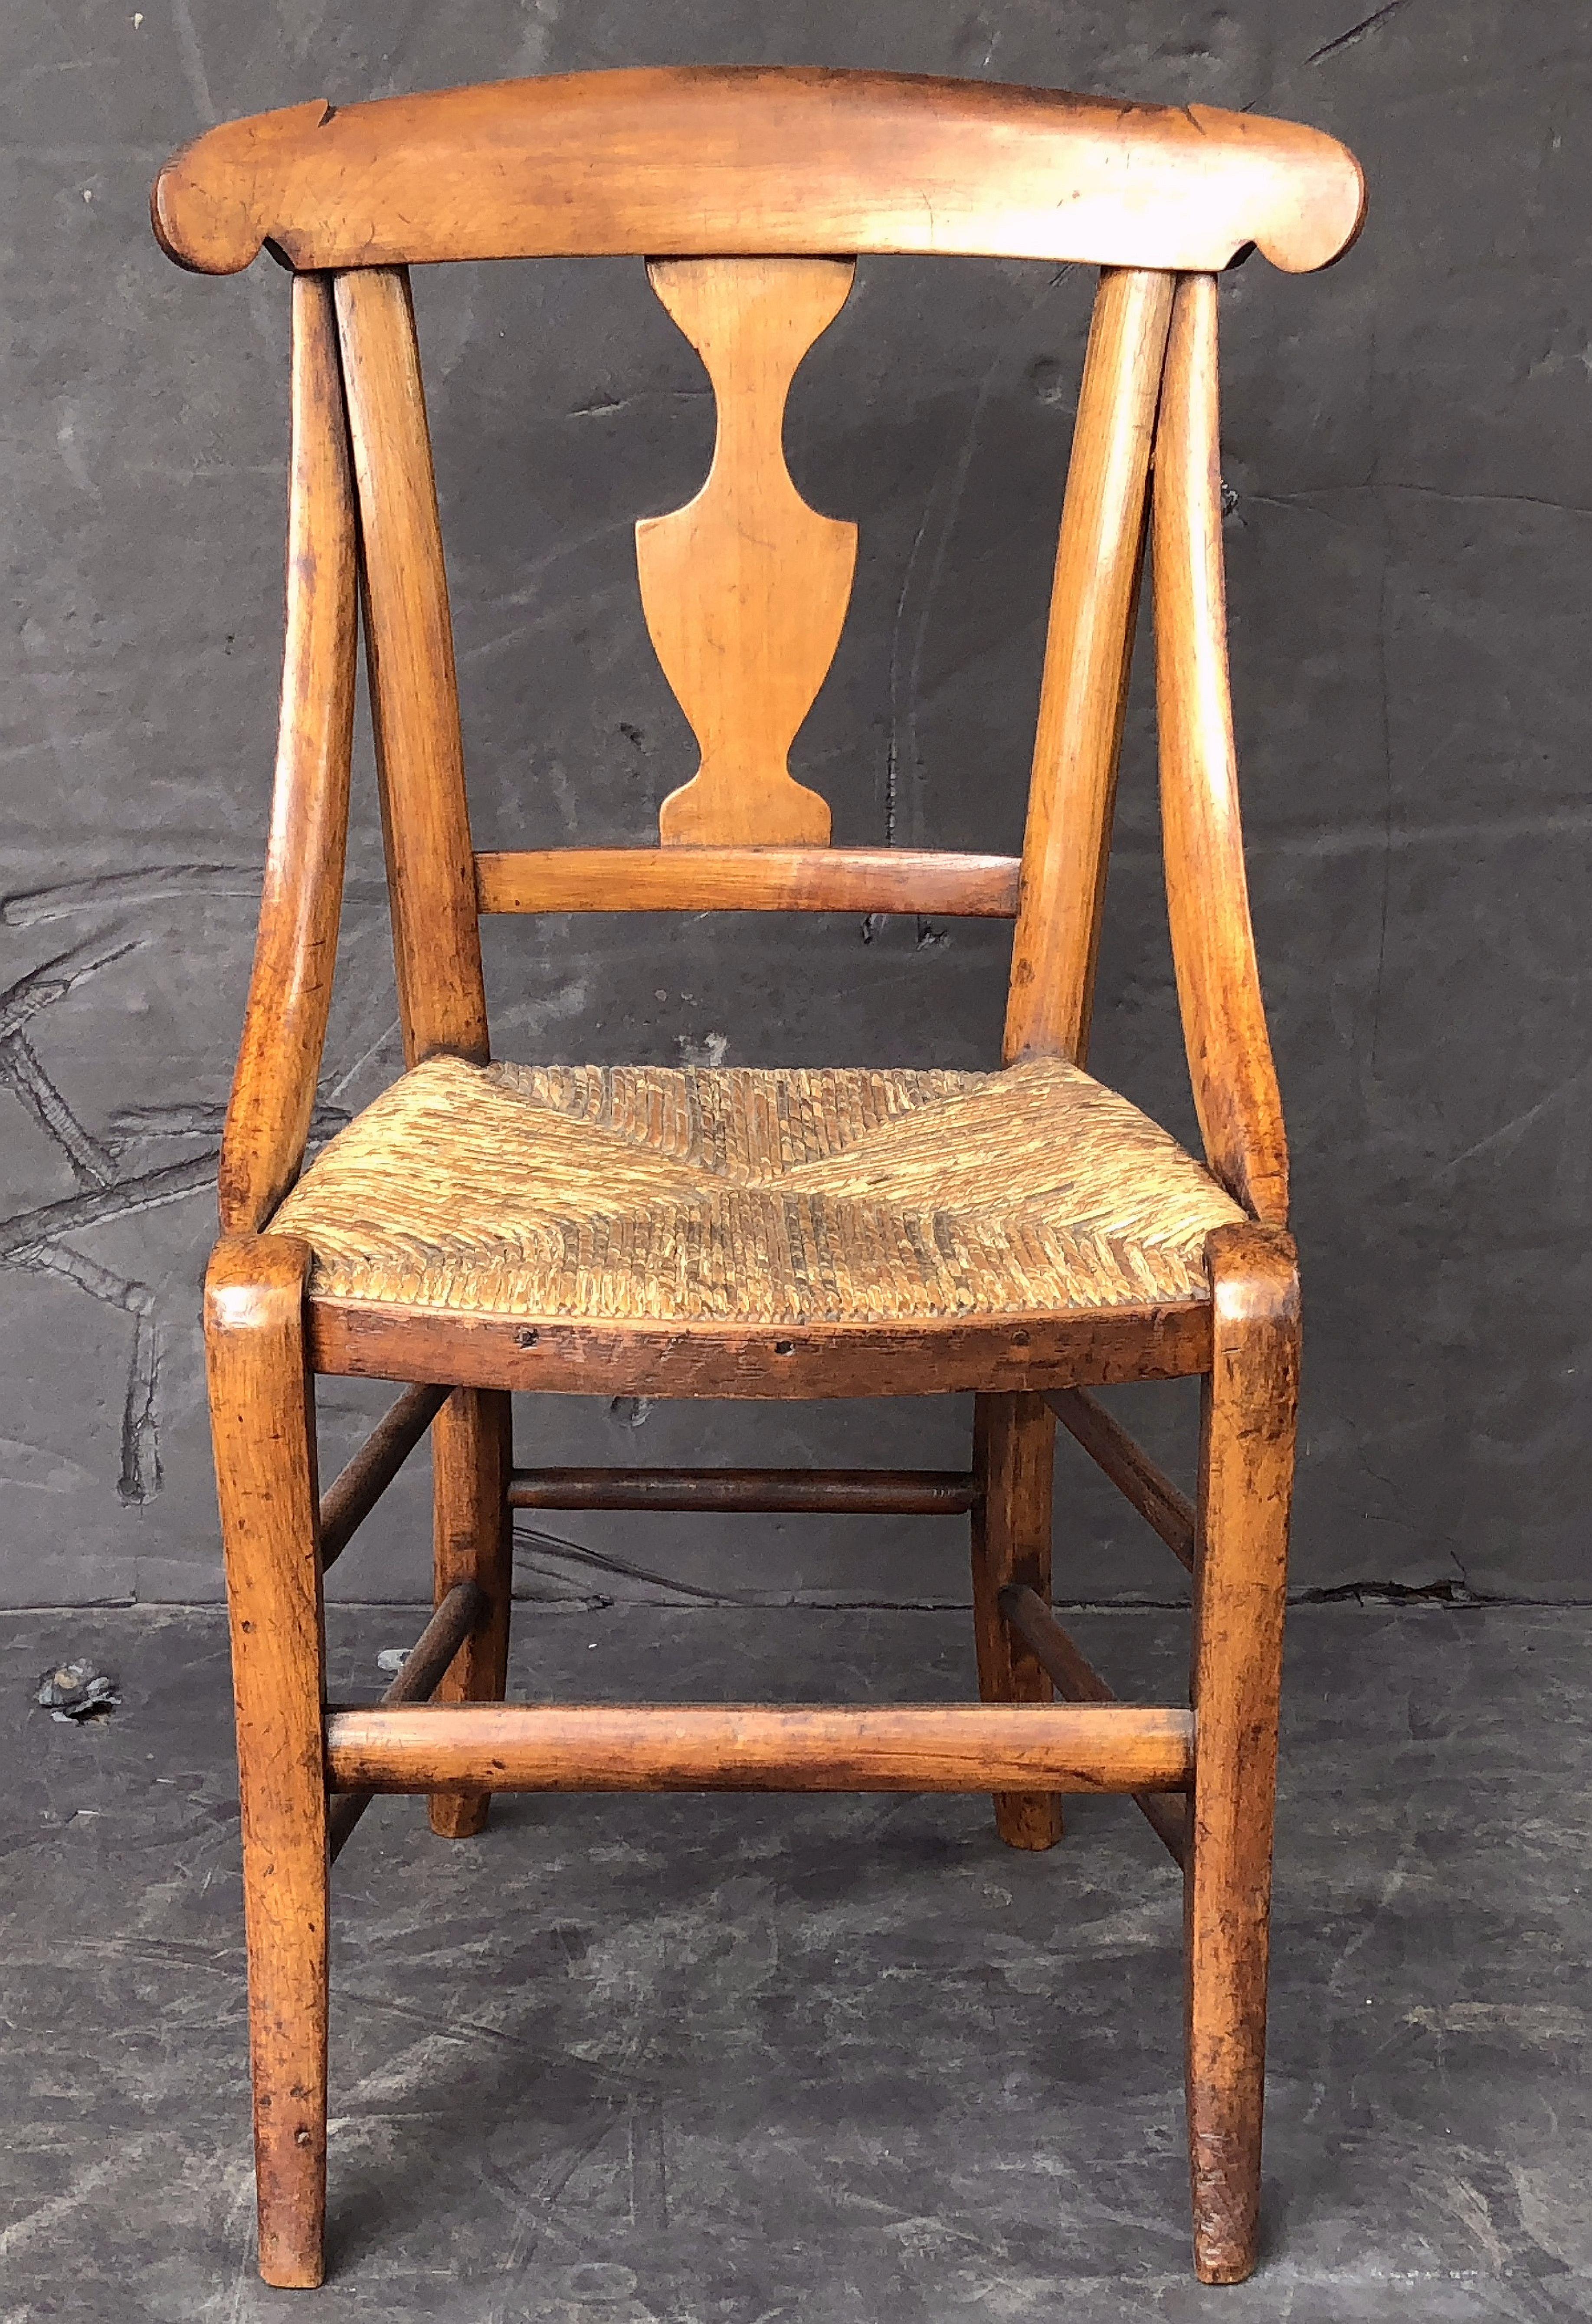 Une belle chaise d'enfant anglaise du 19e siècle, dotée d'un cadre en bois fruitier joliment patiné, d'un dossier en gouttière et d'une assise en jonc.